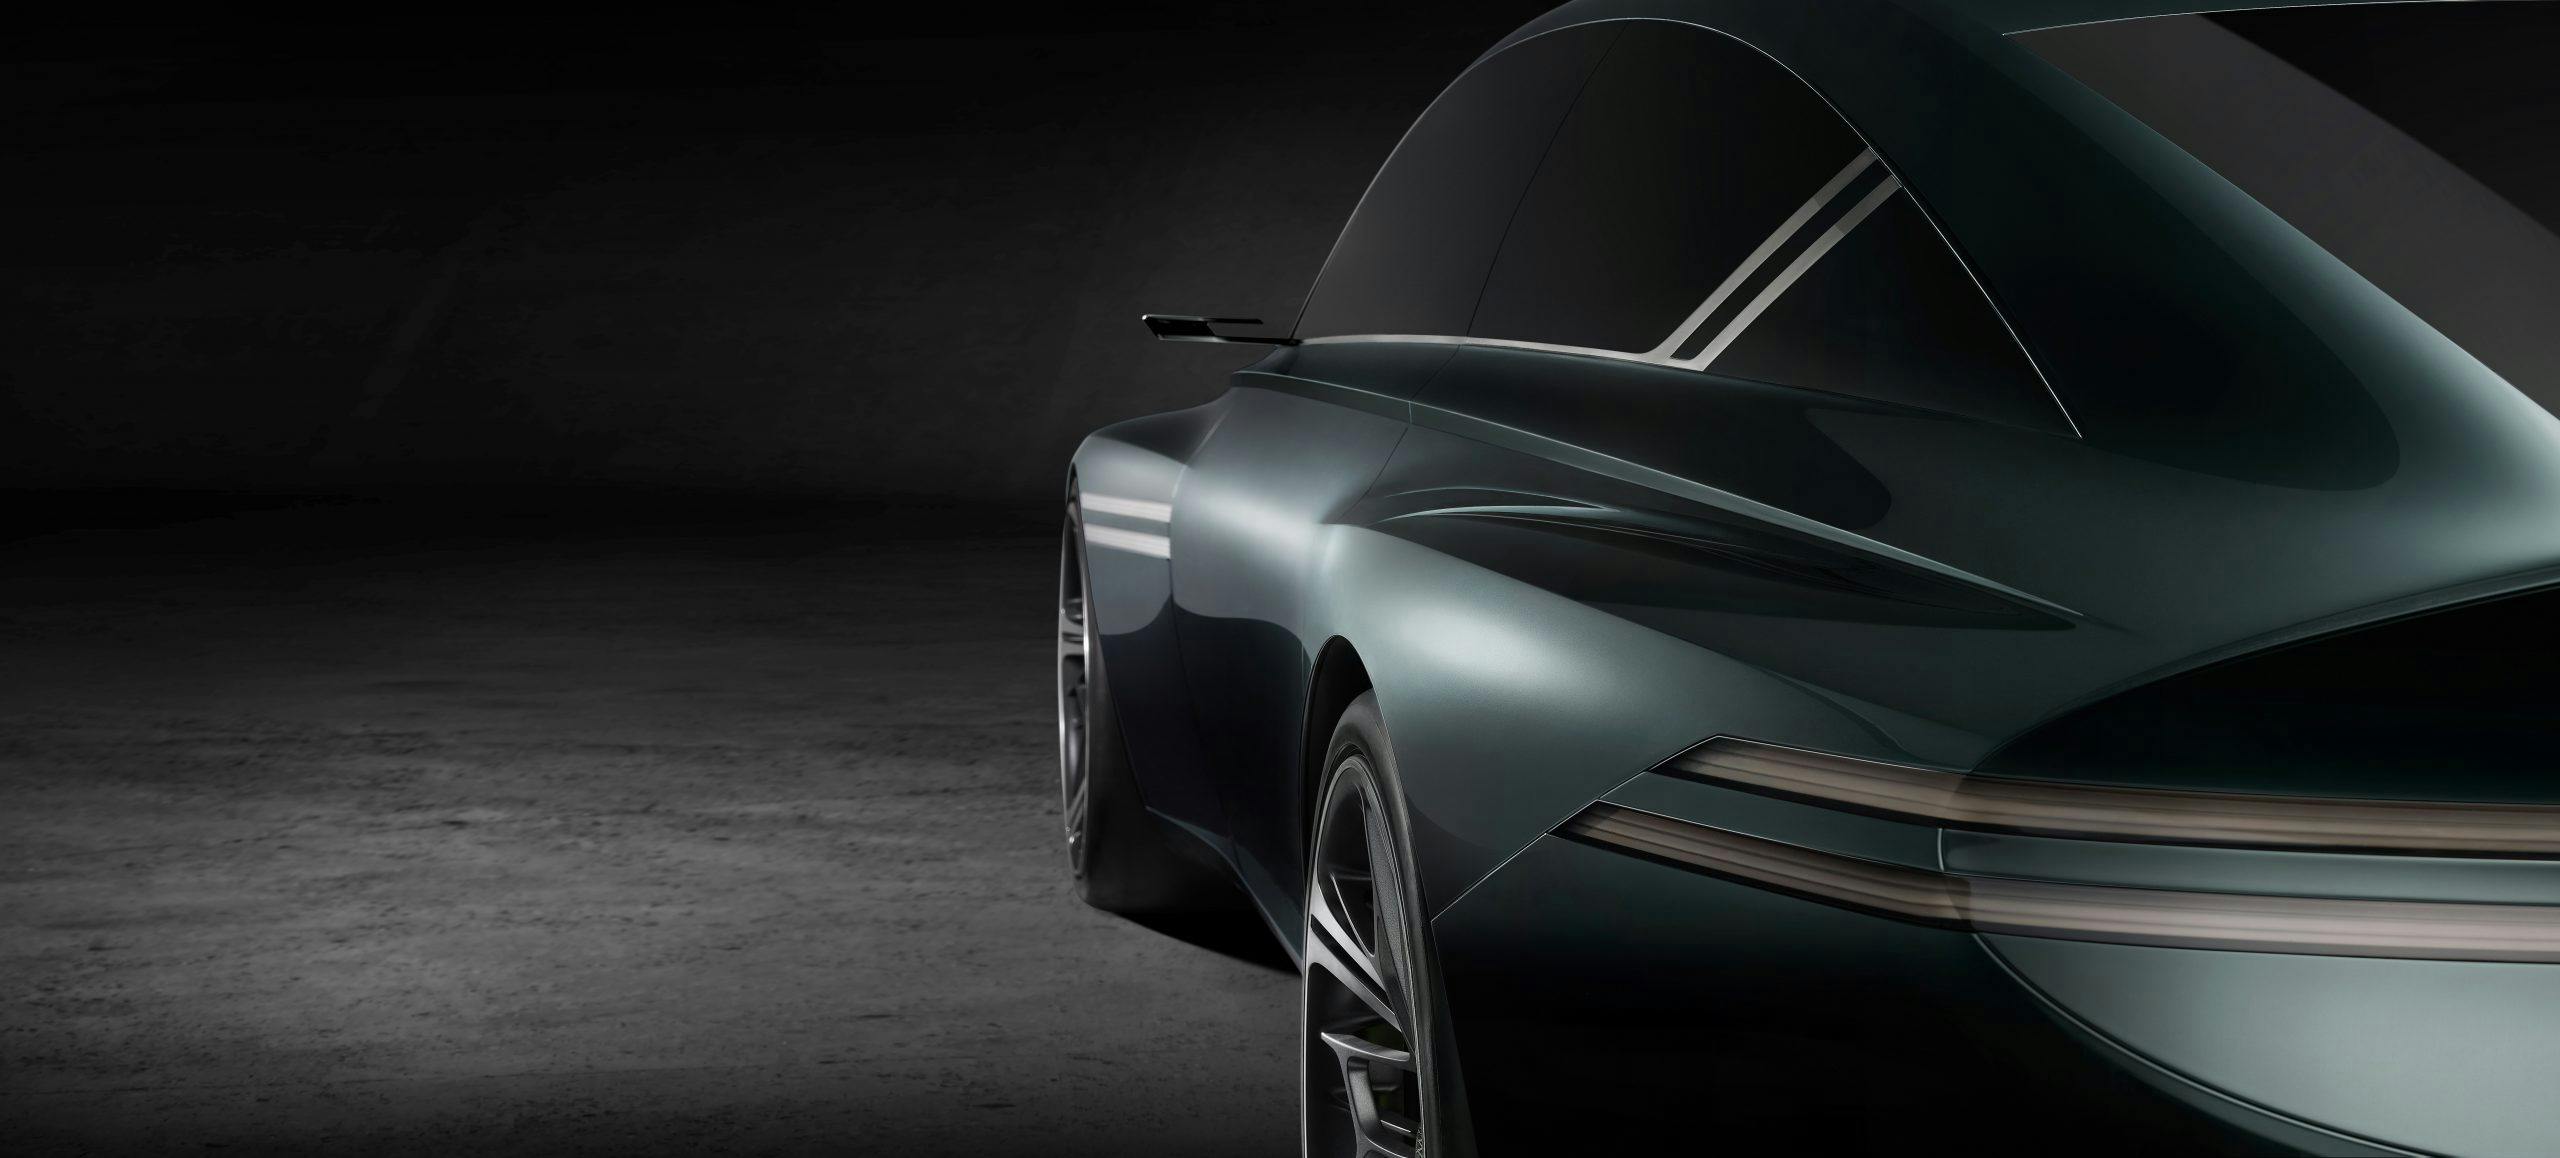 Genesis X Speedium Concept rear three quarter profile